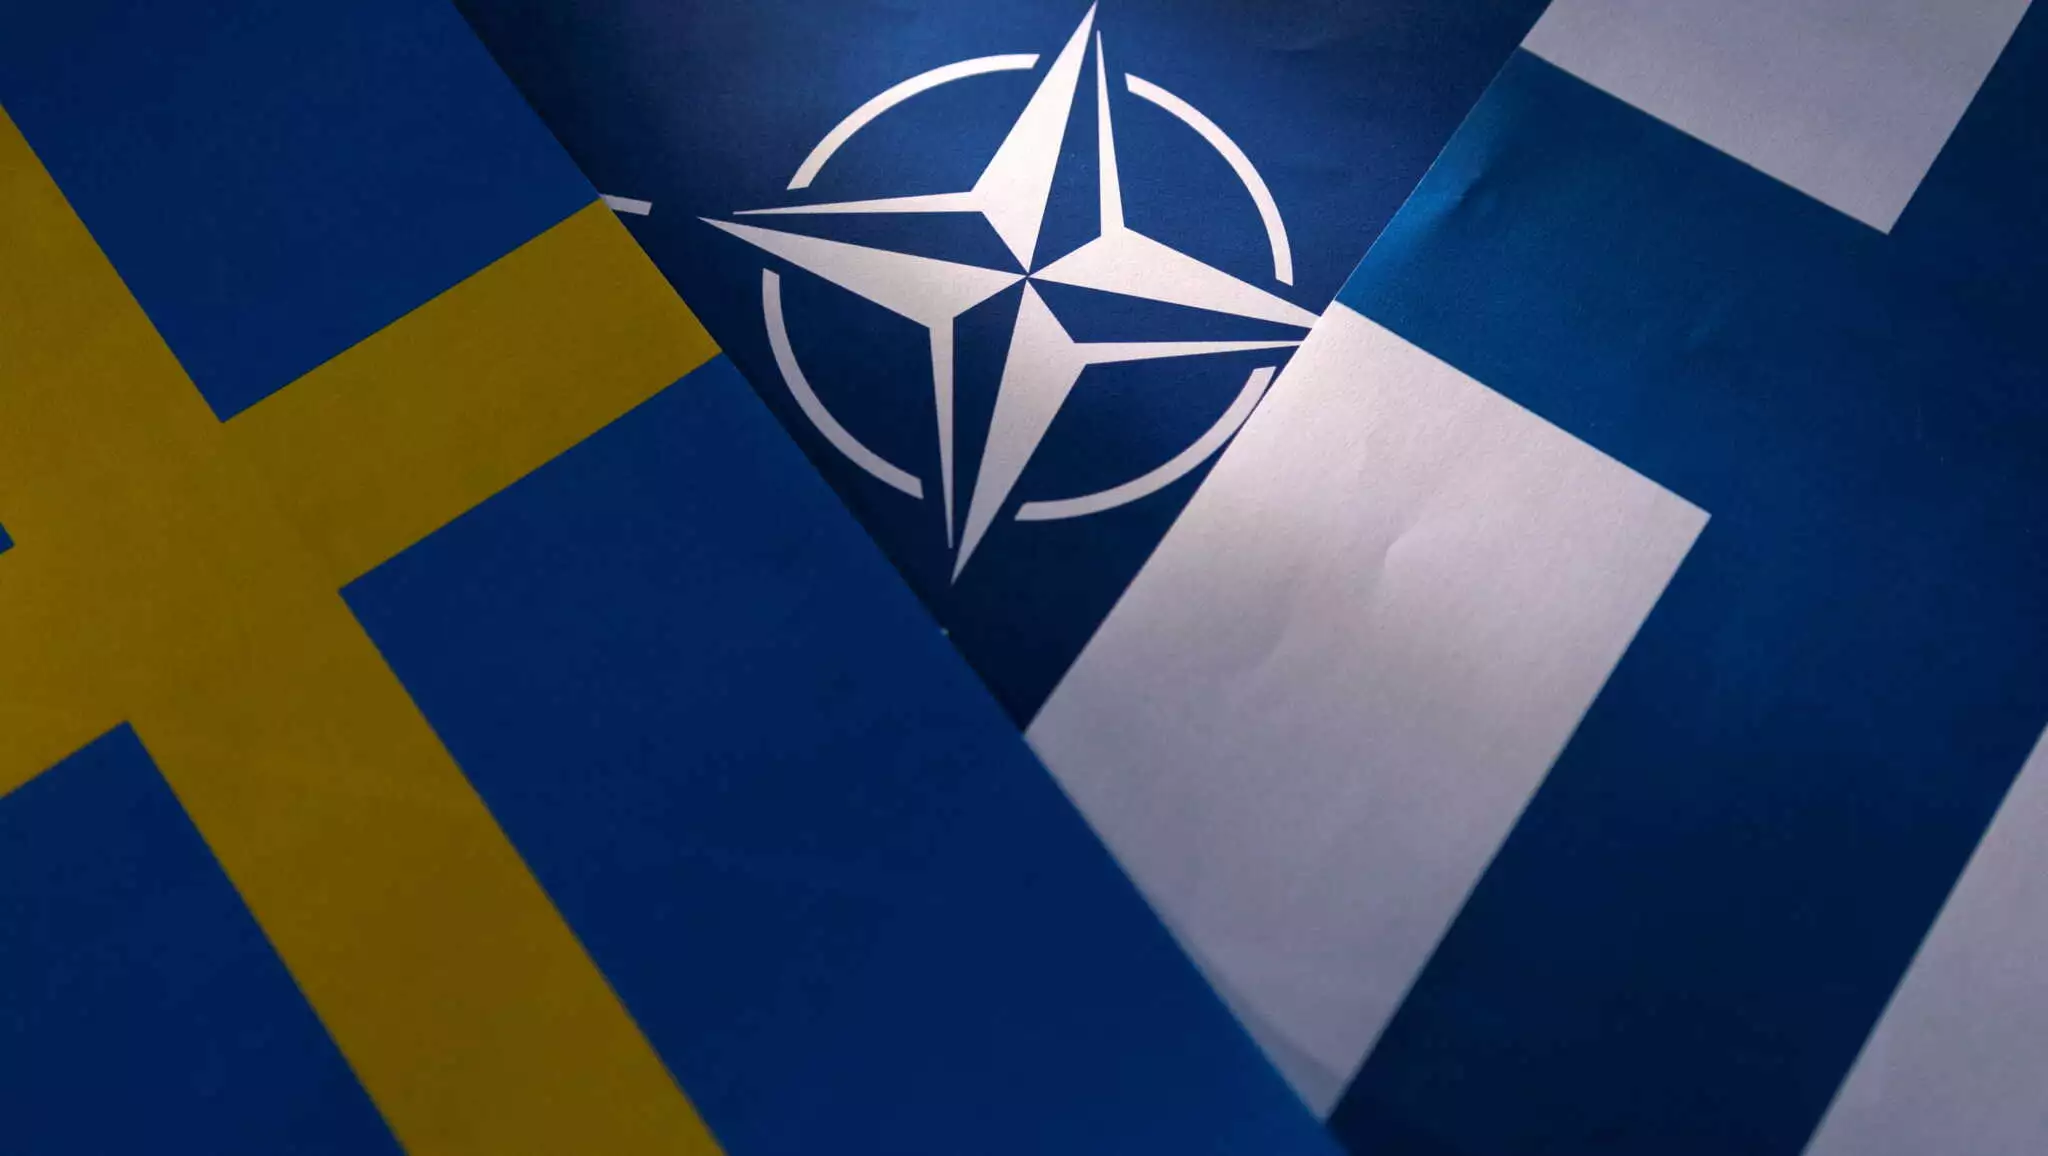 Σουηδία: Η Βουλή ενέκρινε την ένταξή της στο ΝΑΤΟ – Παραμένουν τα εμπόδια από Τουρκία και Ουγγαρία